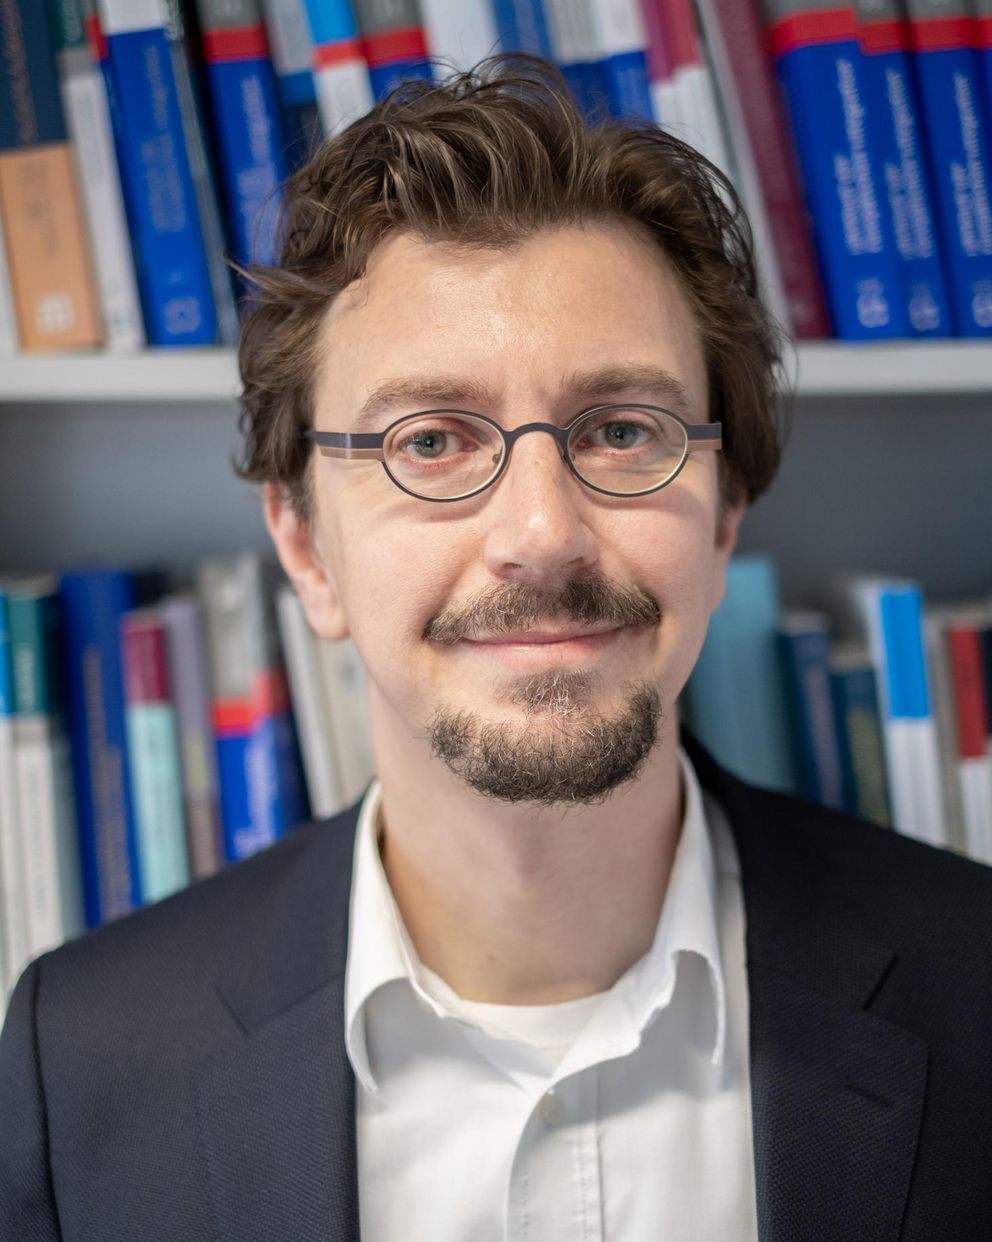 Prof. Dr. Daniel Göler